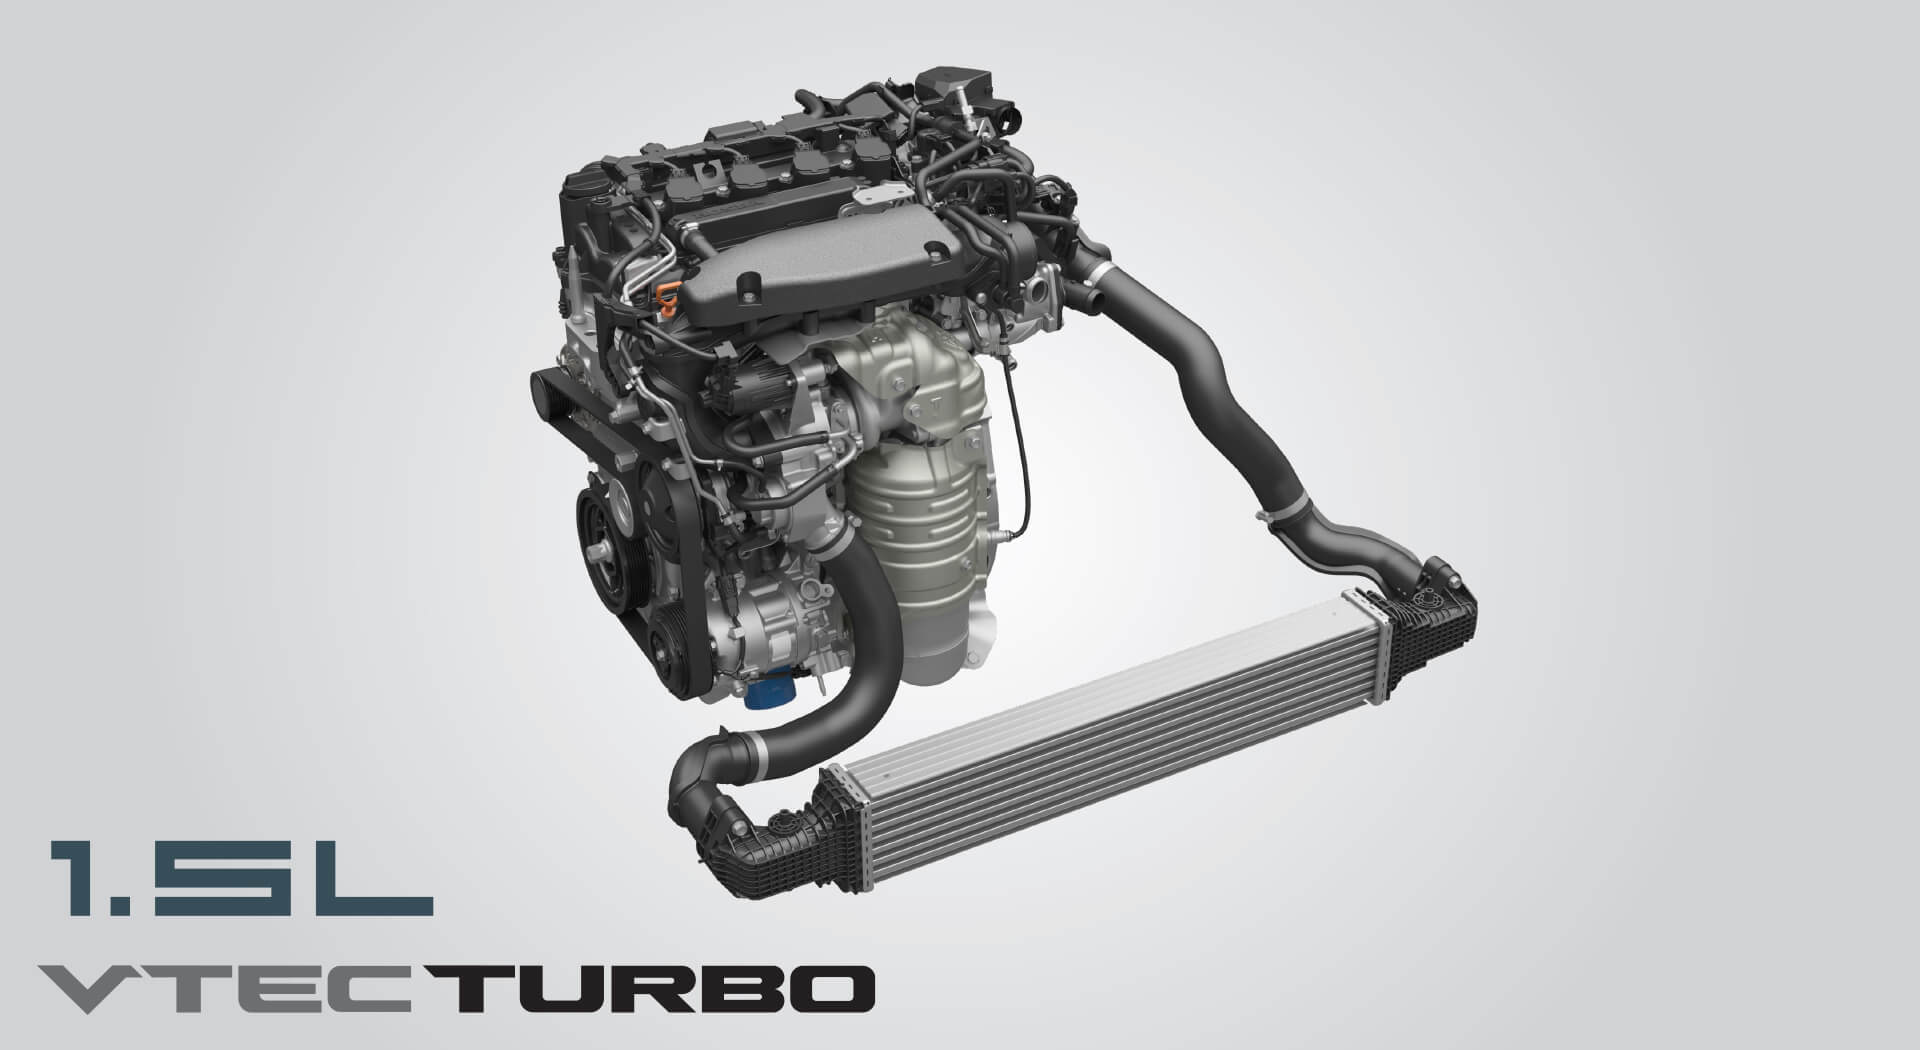 เครื่องยนต์ขนาด 1.5 ลิตร VTEC TURBO ขุมพลังเครื่องยนต์เทอร์โบ 190 แรงม้า มาพร้อมเทคโนโลยี Direct Injection และ Turbocharger มอบสมรรถนะการขับขี่ และอัตราประหยัดน้ำมันที่ดีเยี่ยม